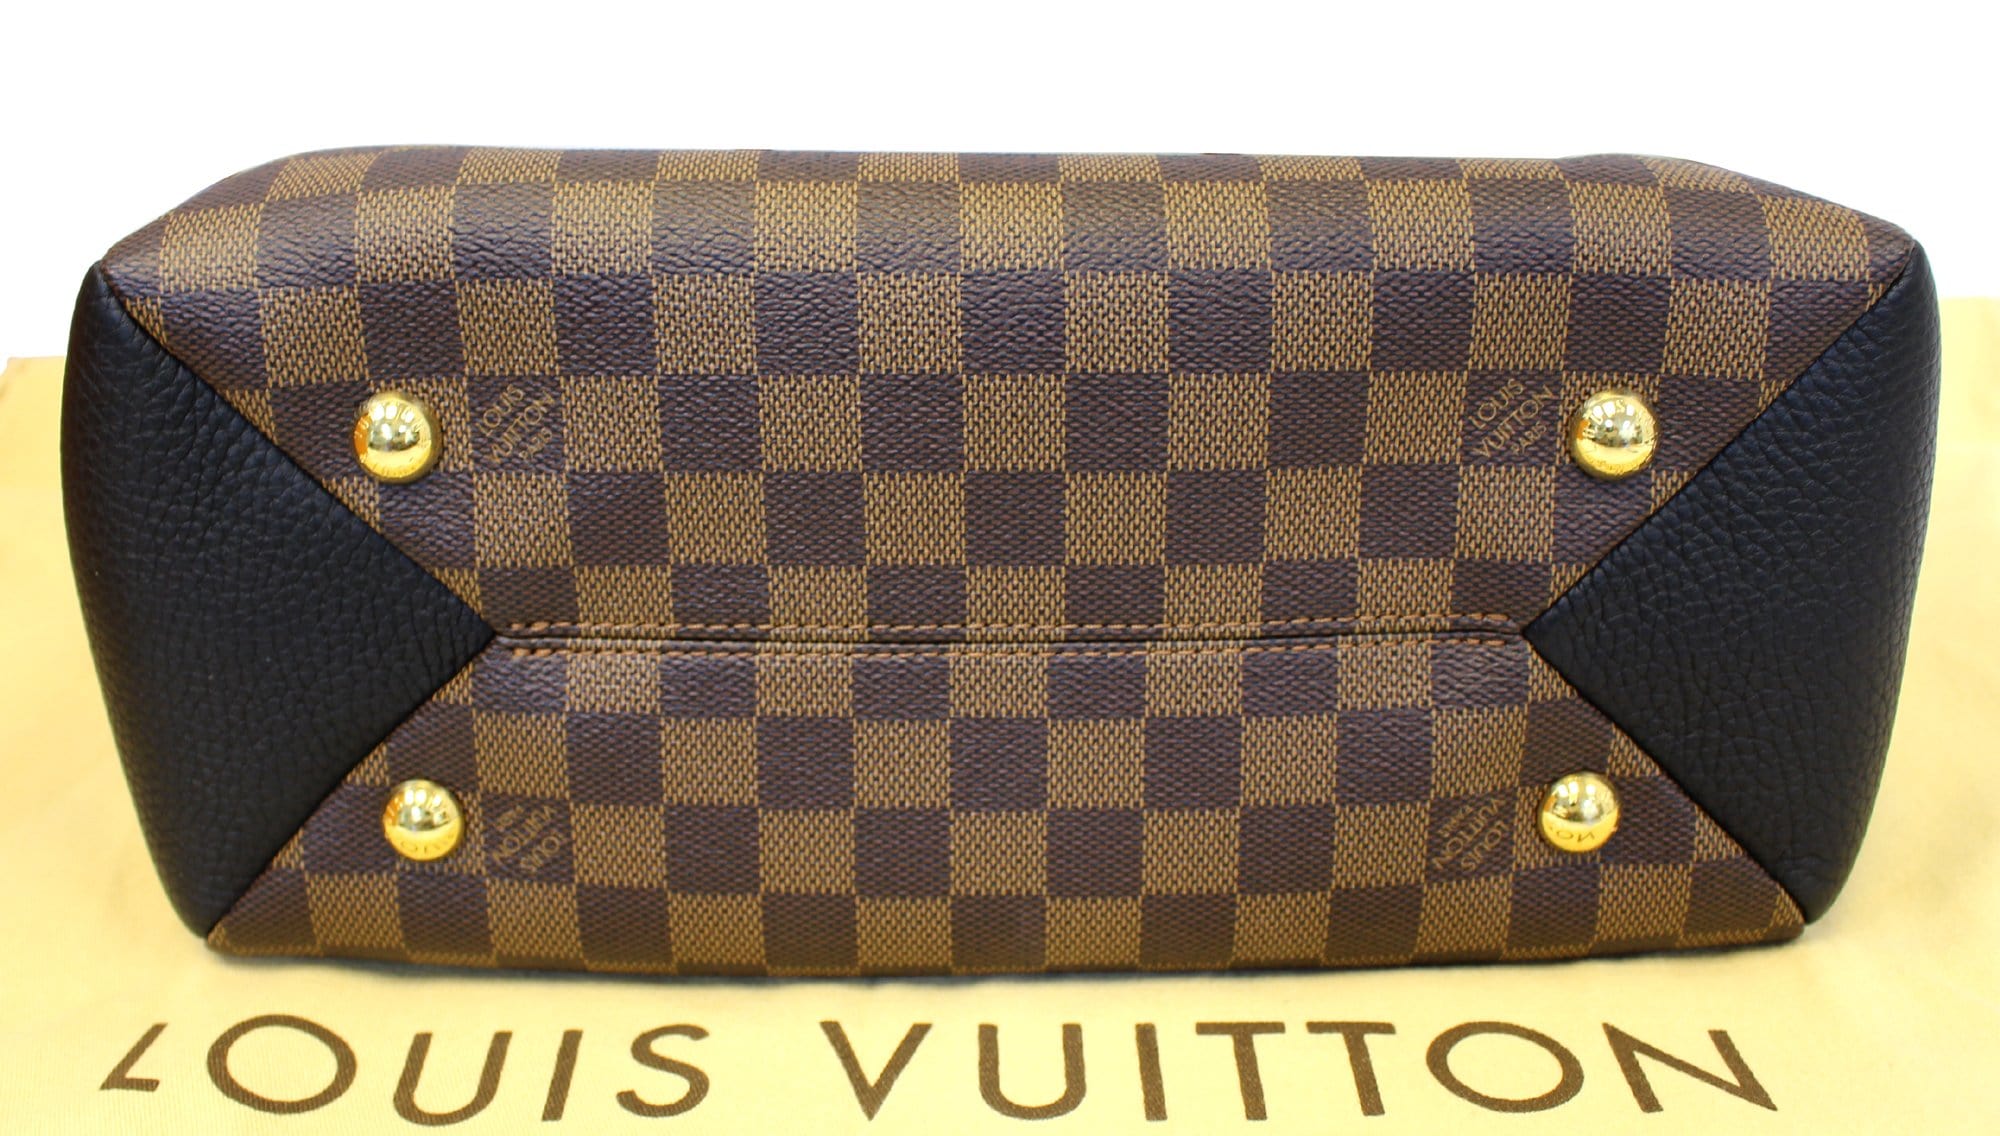 Louis Vuitton N41675 Brittany Damier Ebene Canvas Bordeaux 2-Way Bag  (M10127) - The Attic Place